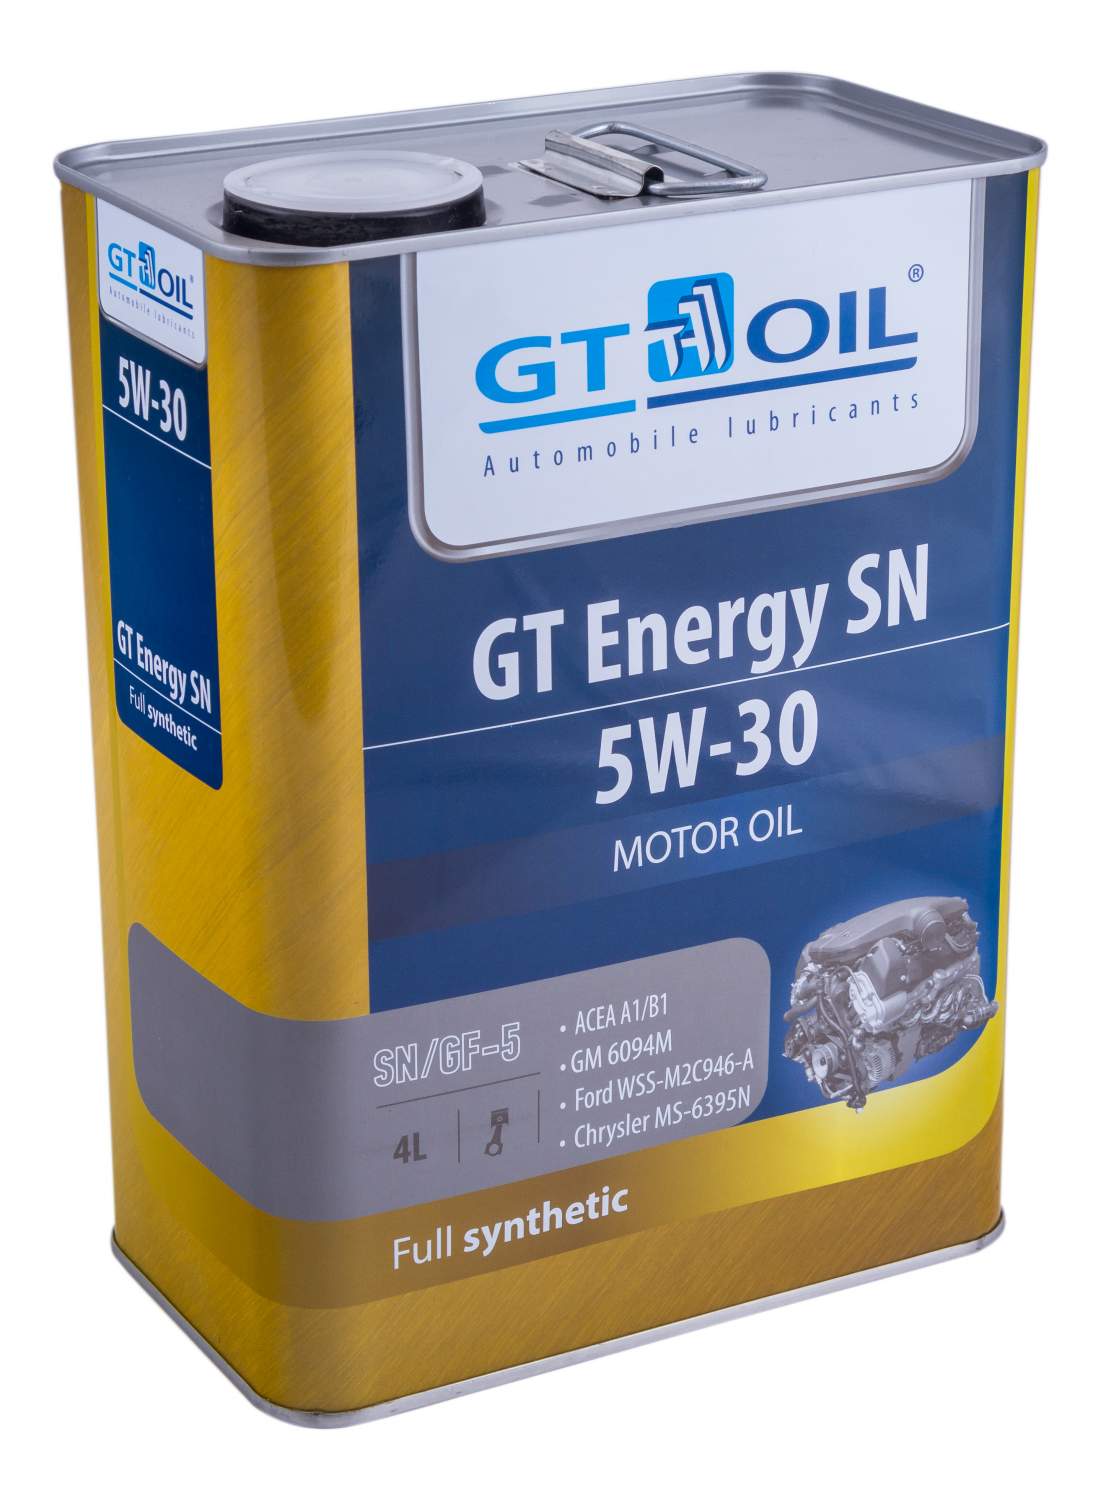 Моторные масла для дизельных двигателей GT OIL -  моторное масло .